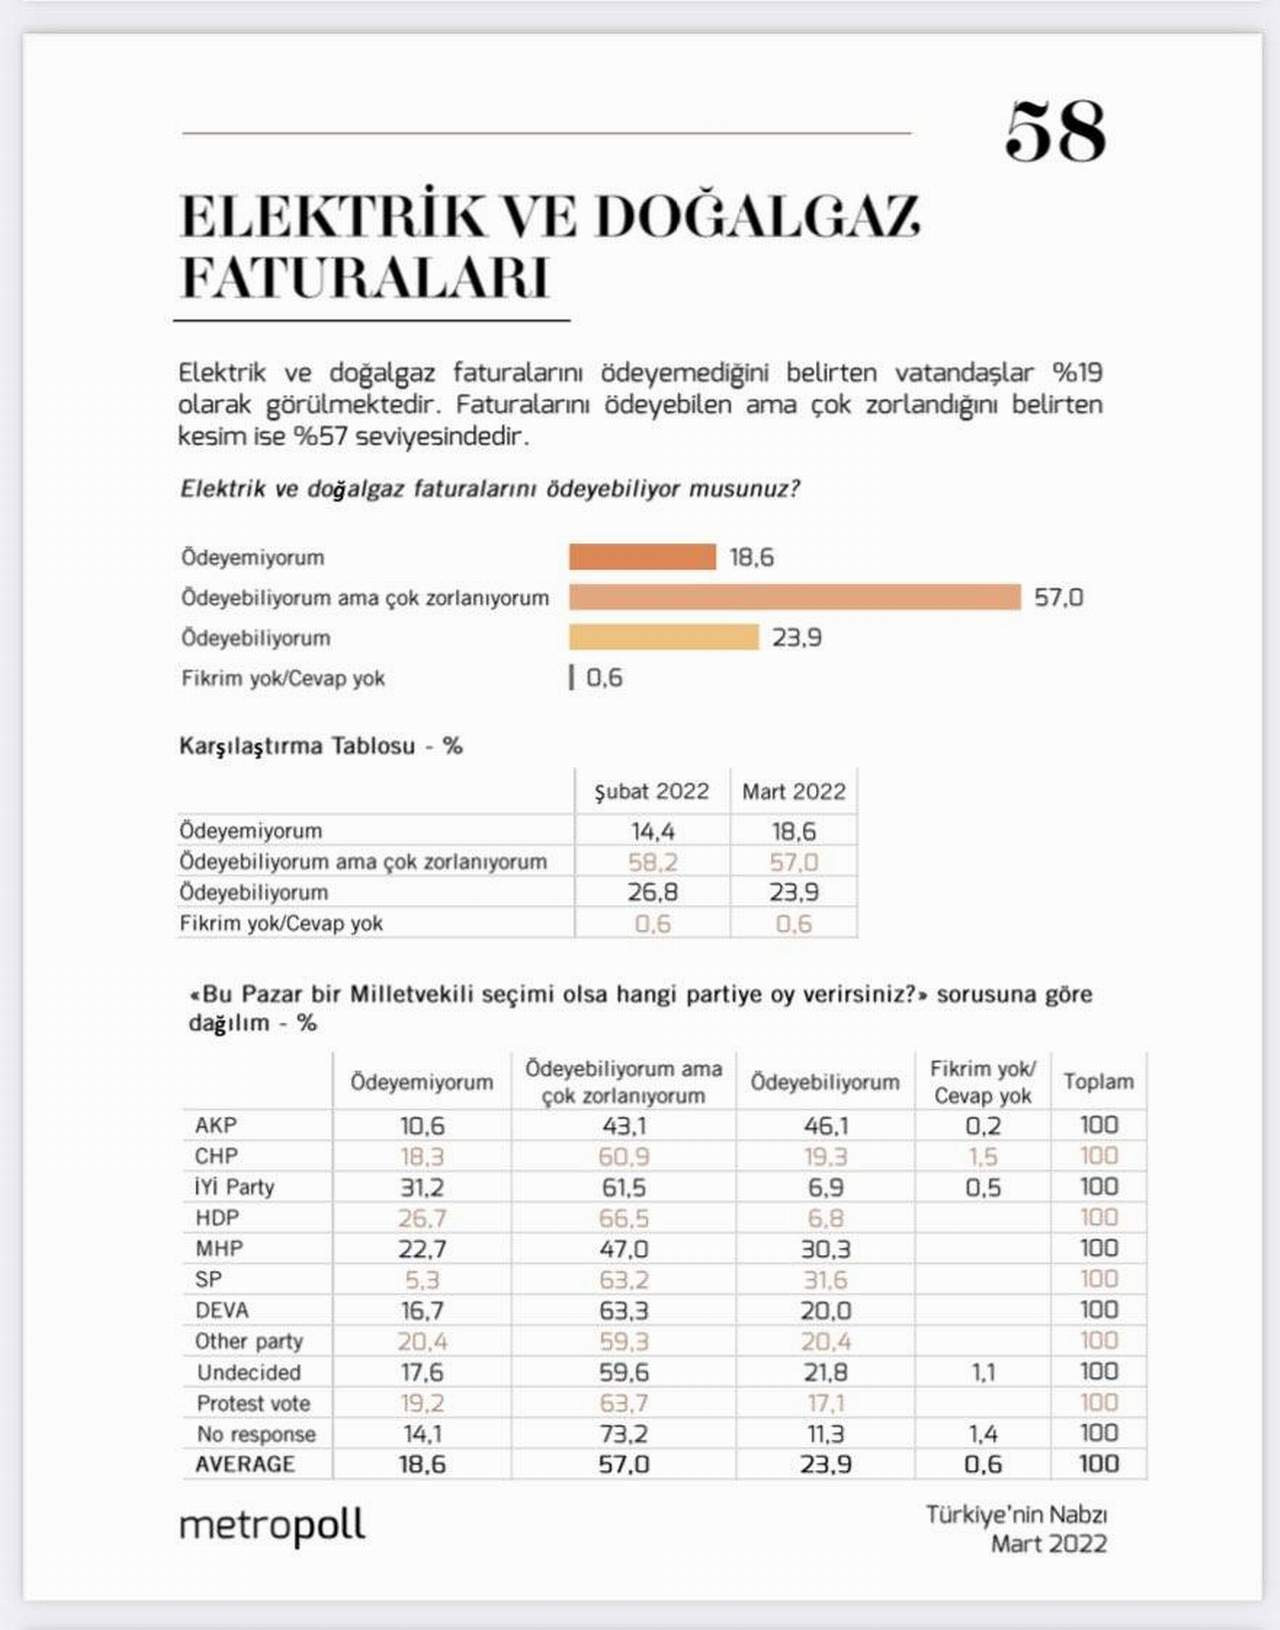 metropoll doğal gaz elektrik faturası anket sonucu